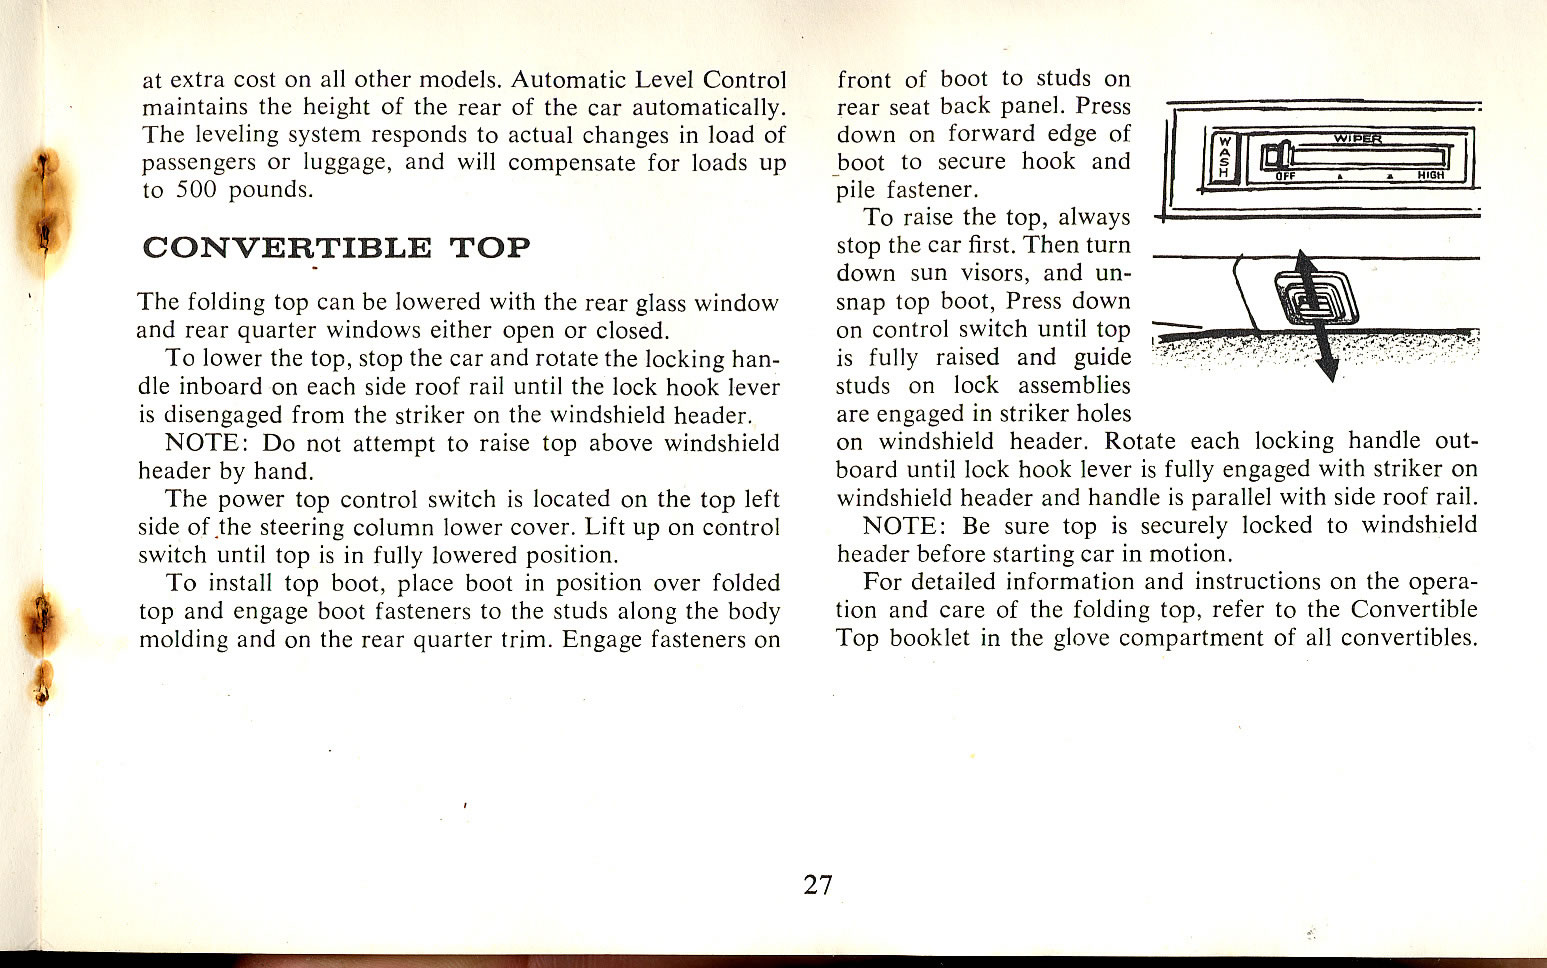 1965 Cadillac Manual-27